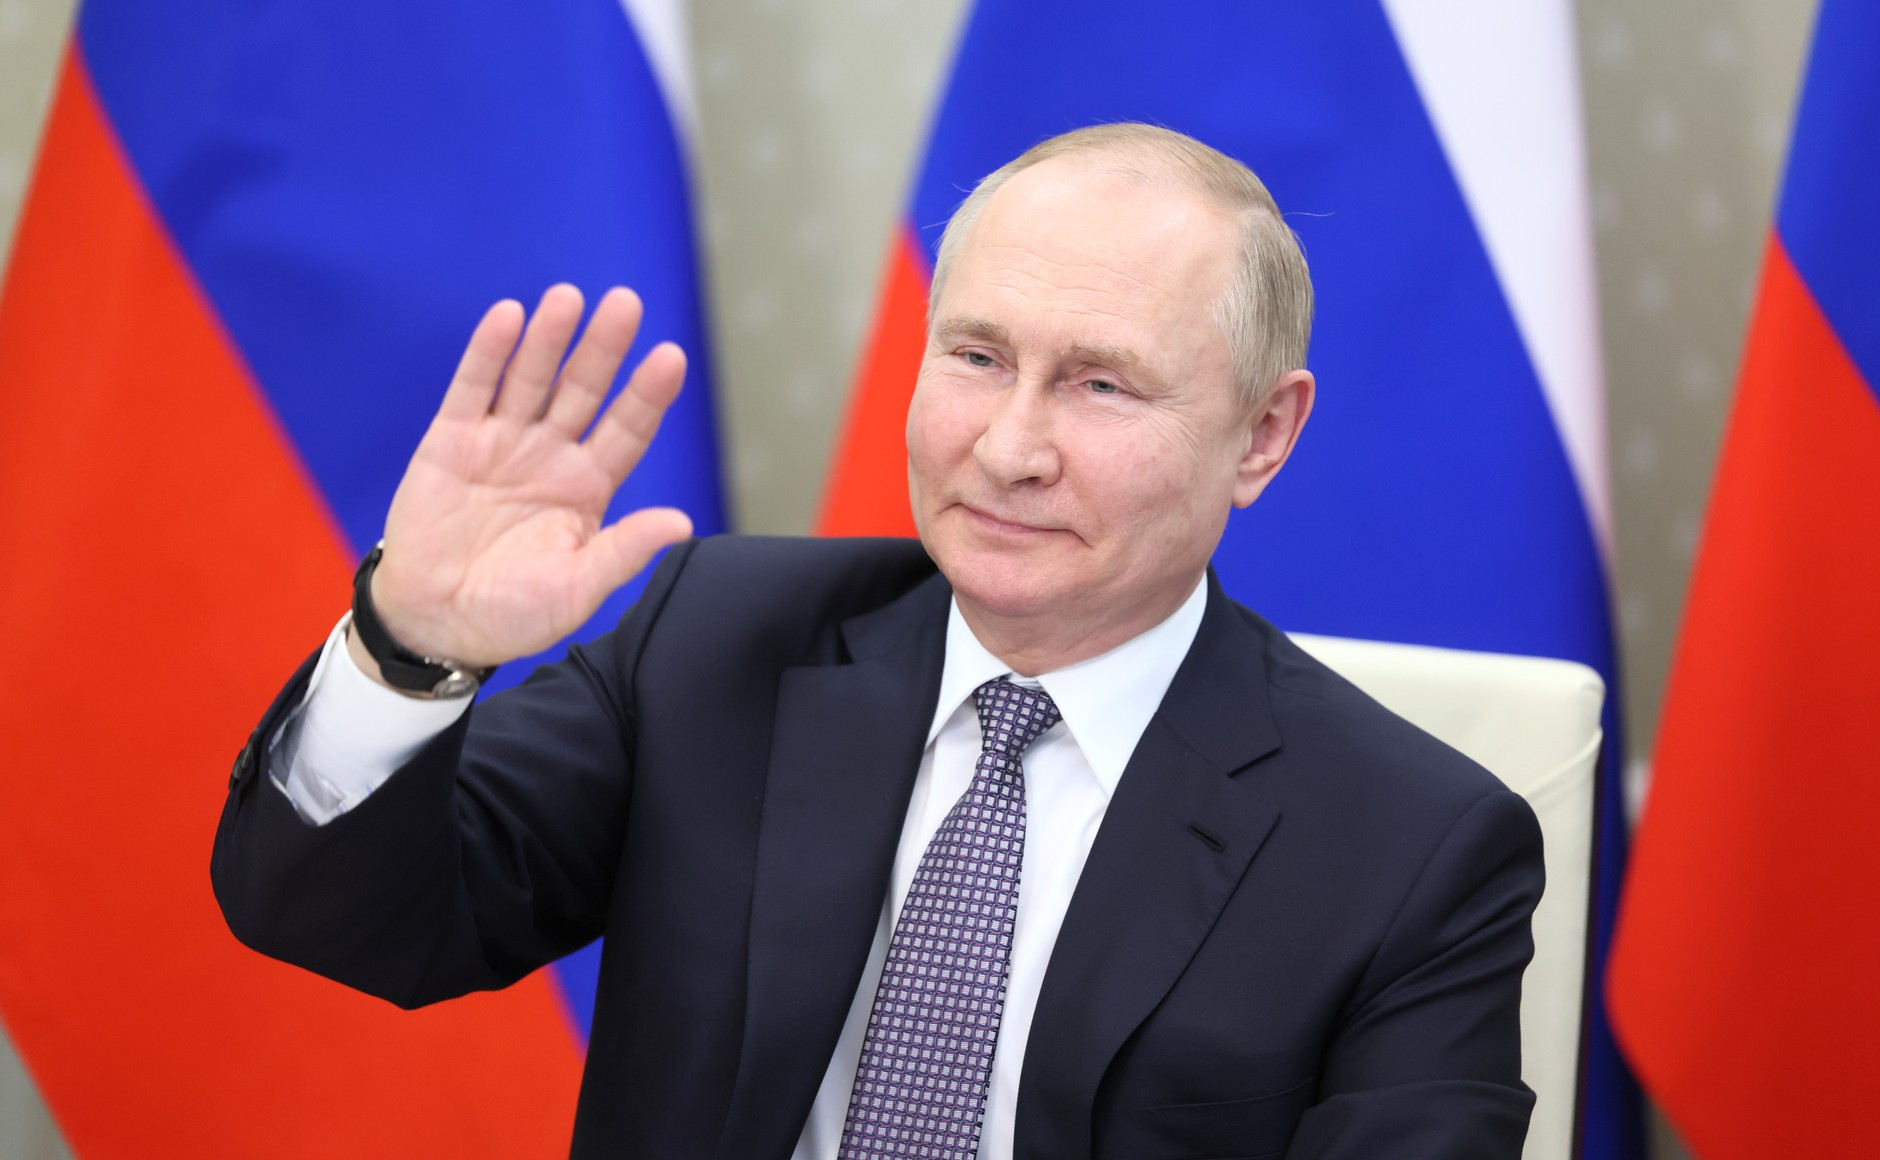 Сладкая месть Путина: Германия получила удар за введенные против России санкции